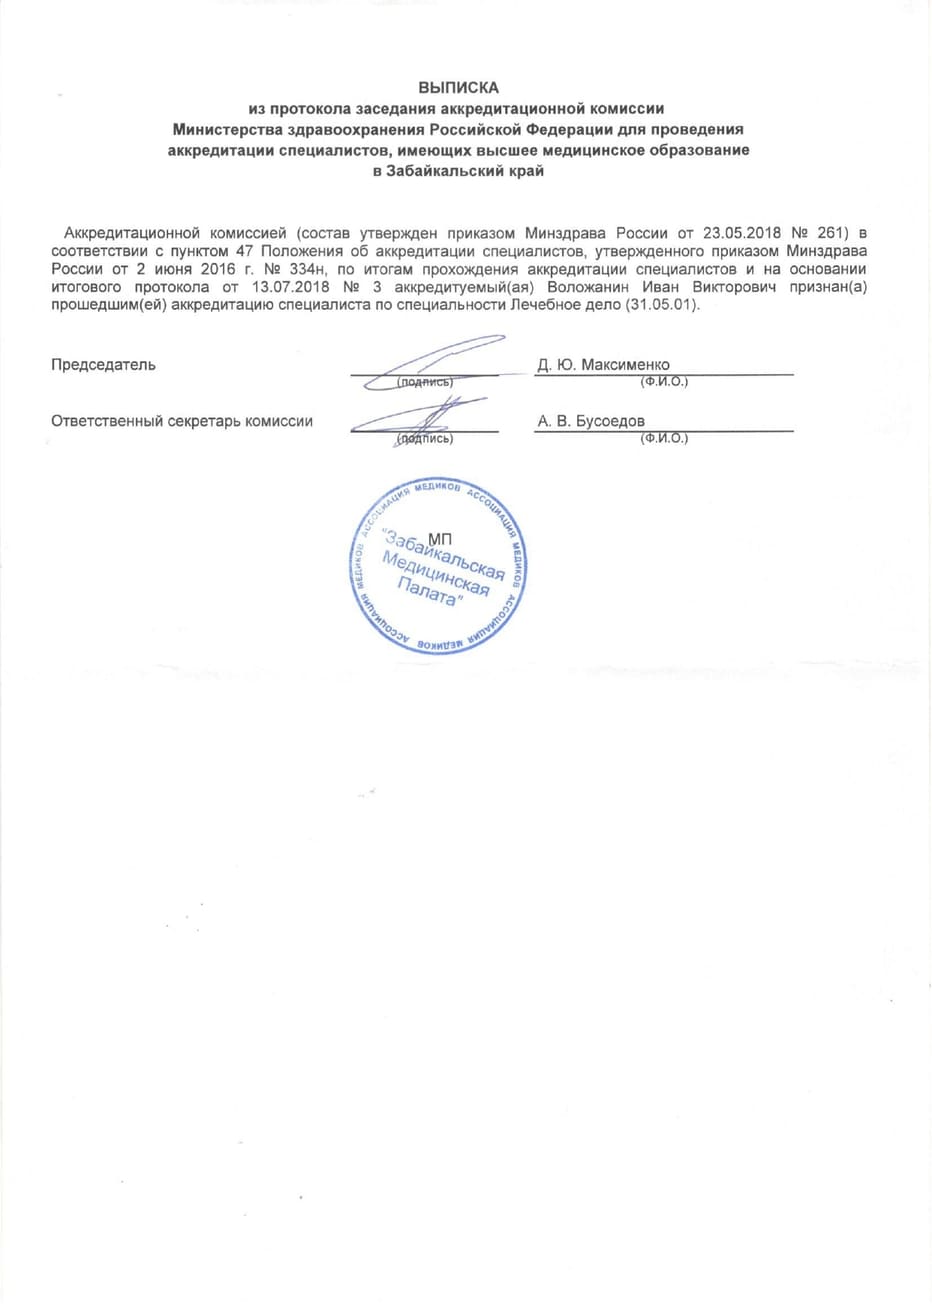 Диплом и сертификат  Воложанин Иван Викторович